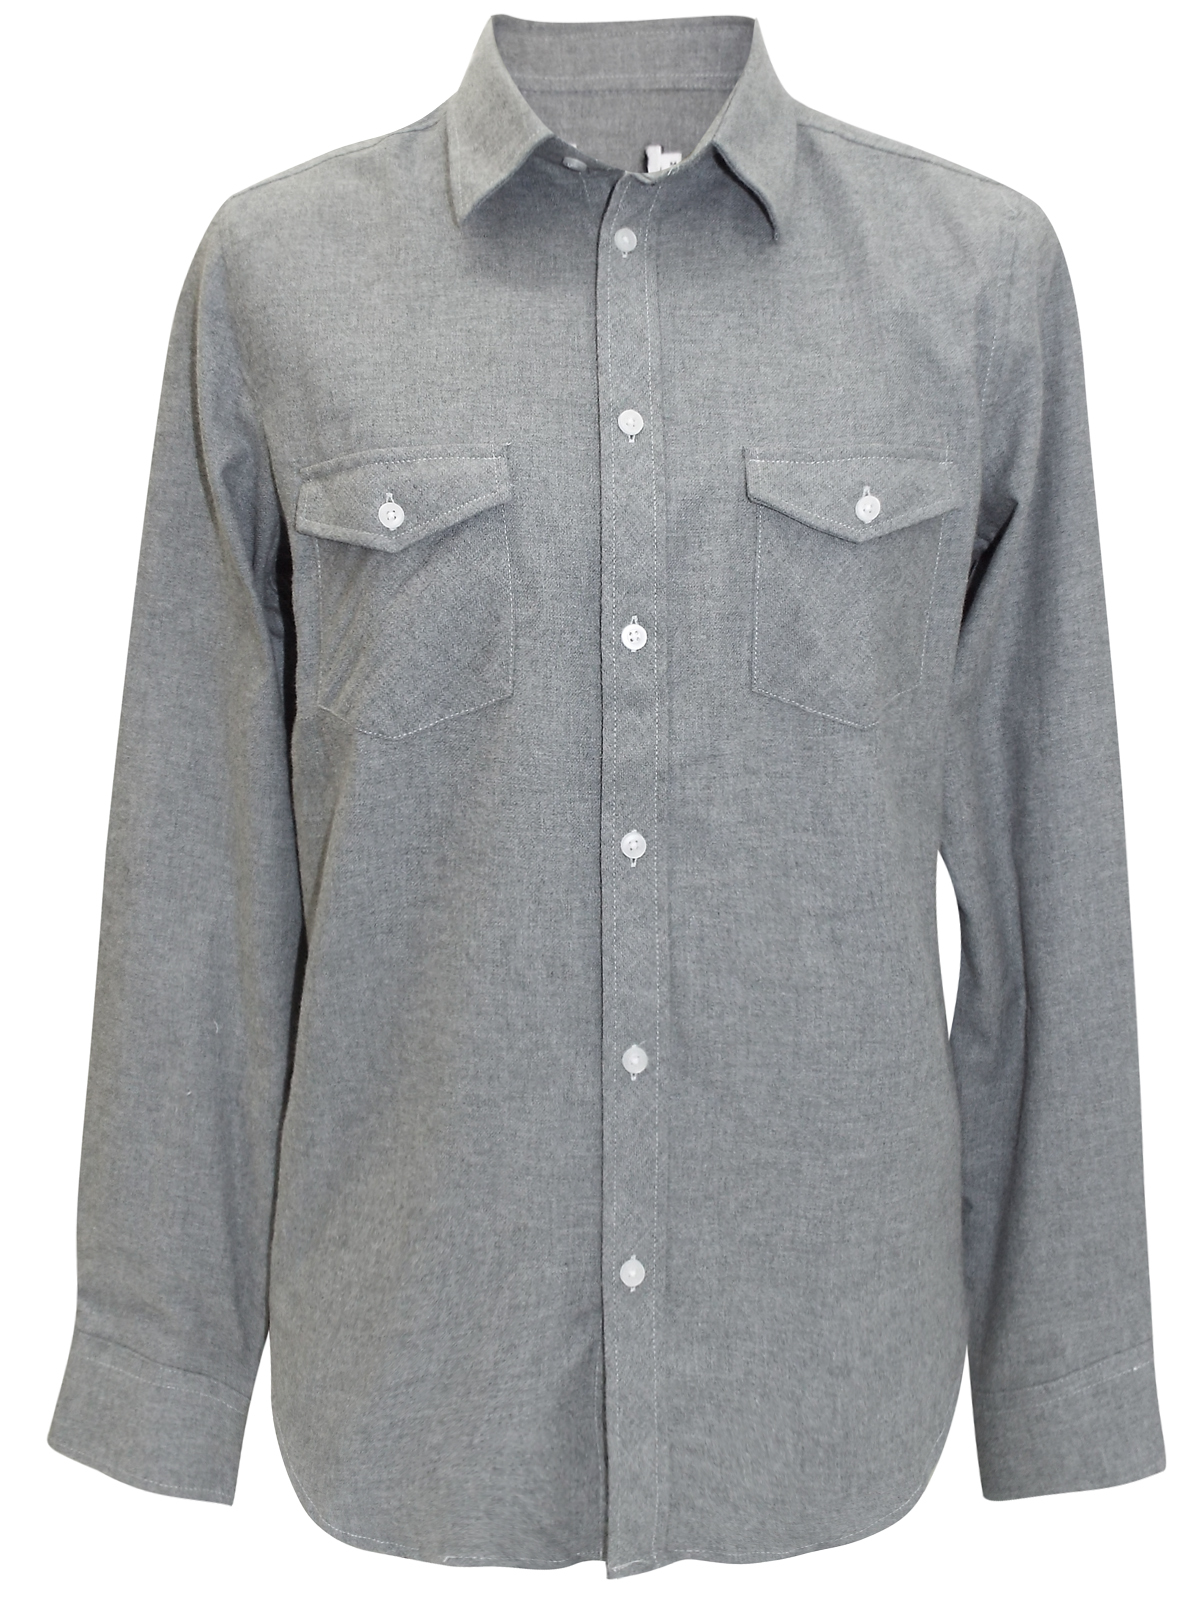 GREY Brushed Cotton Long Sleeve Shirt - Size Small to XXLarge